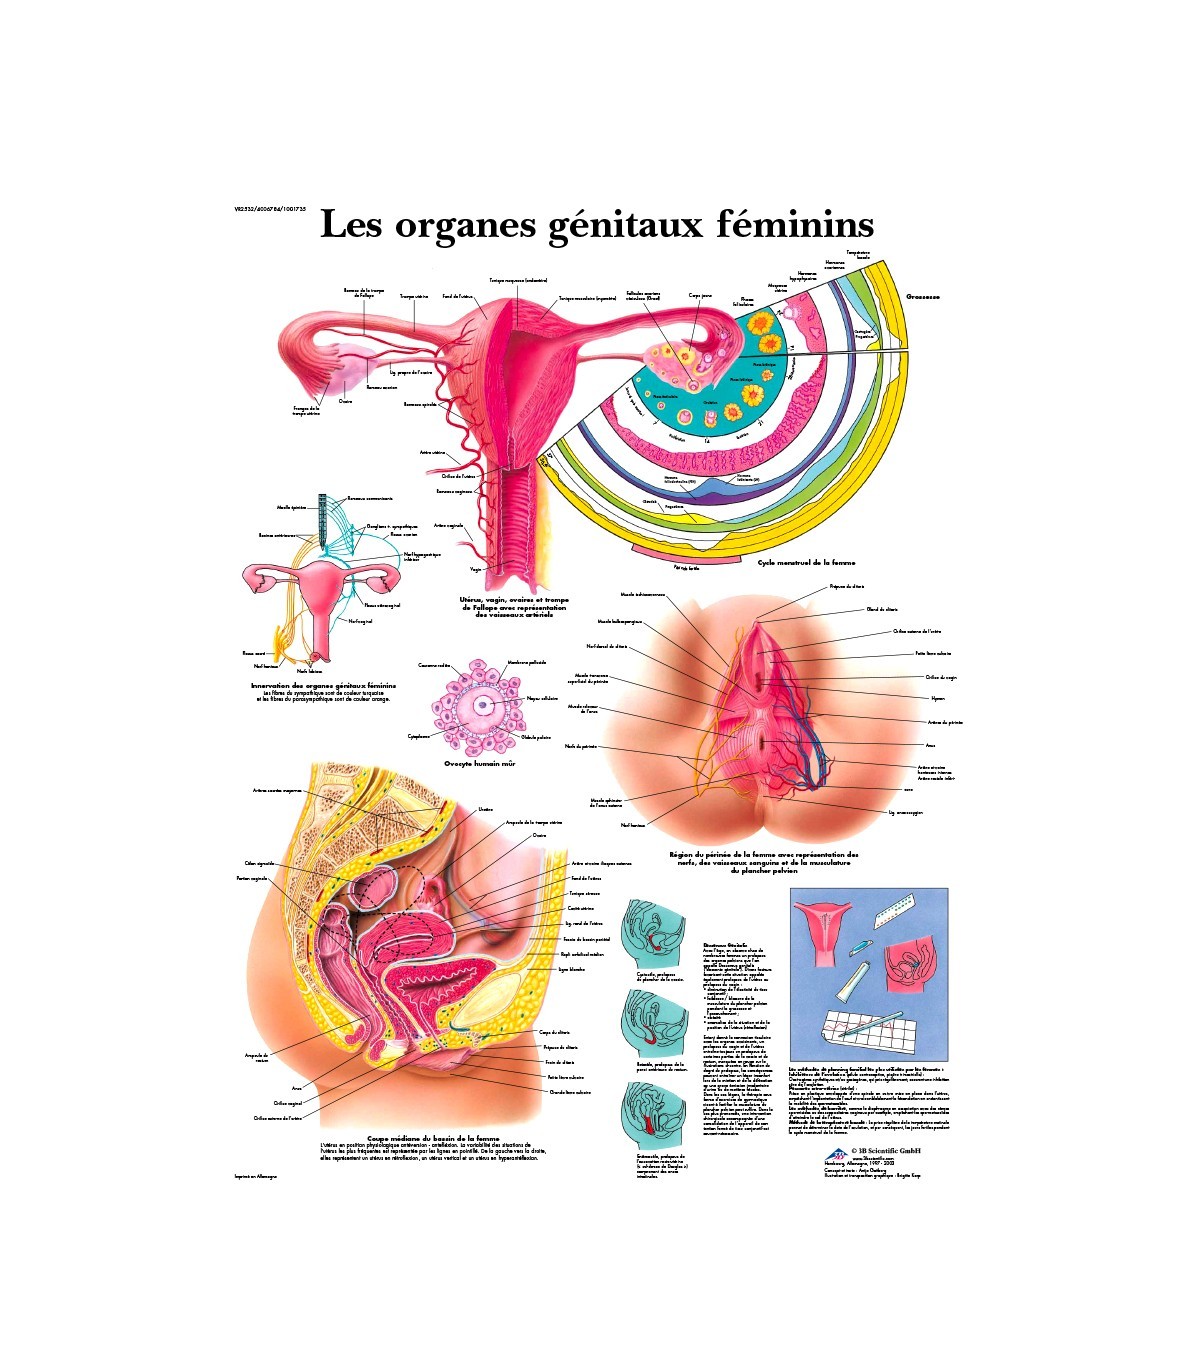 Le soin des organes génitaux